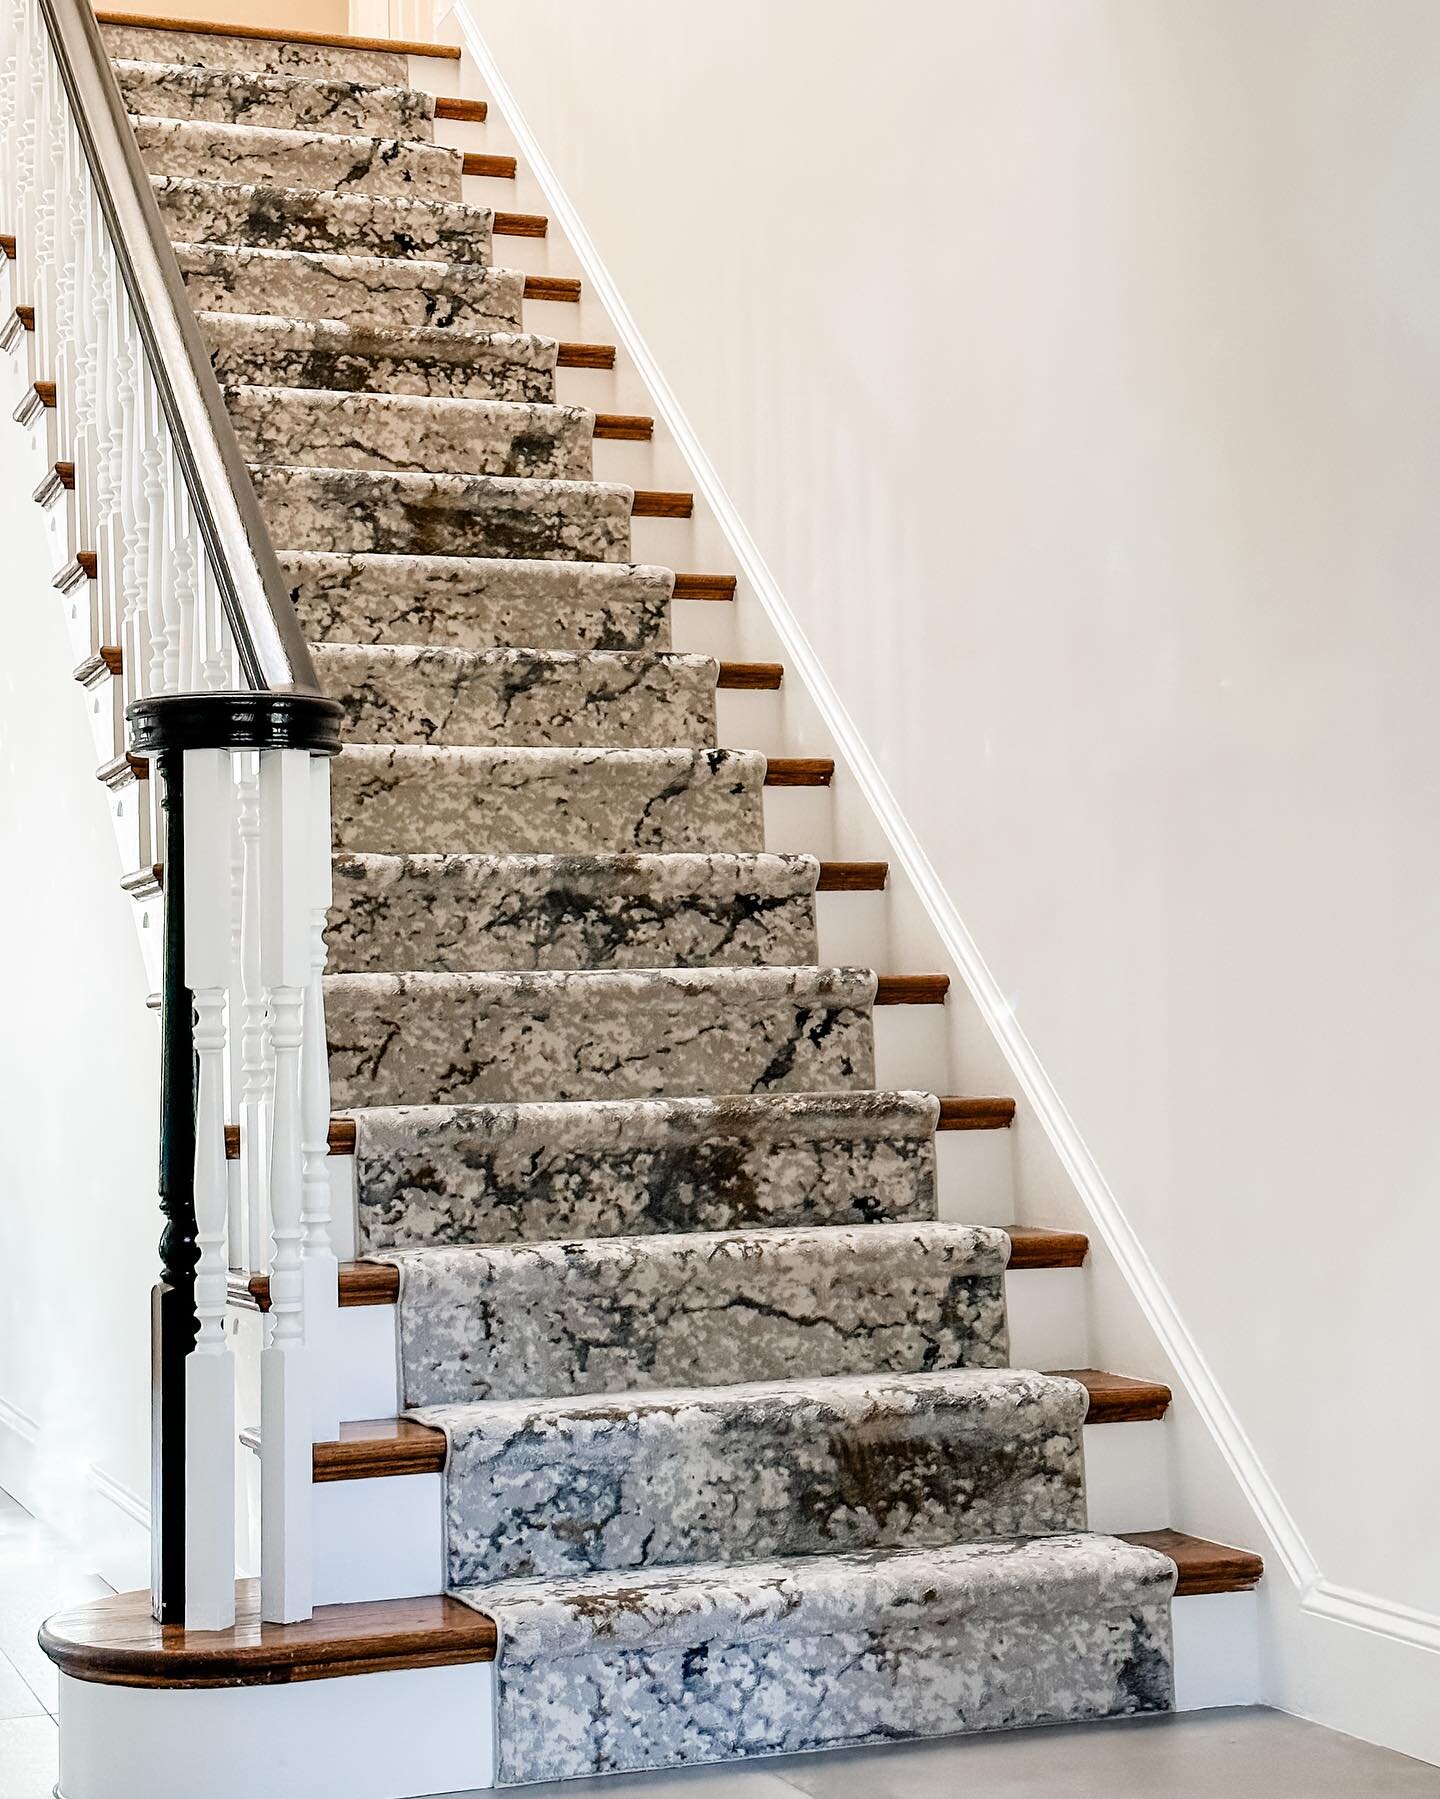 ENTRY Statement: Stair ART

#darabeitlerinteriors 
#dmvinteriordesigner 
#homedesign 
#stairs 
#carpet 
#staircase